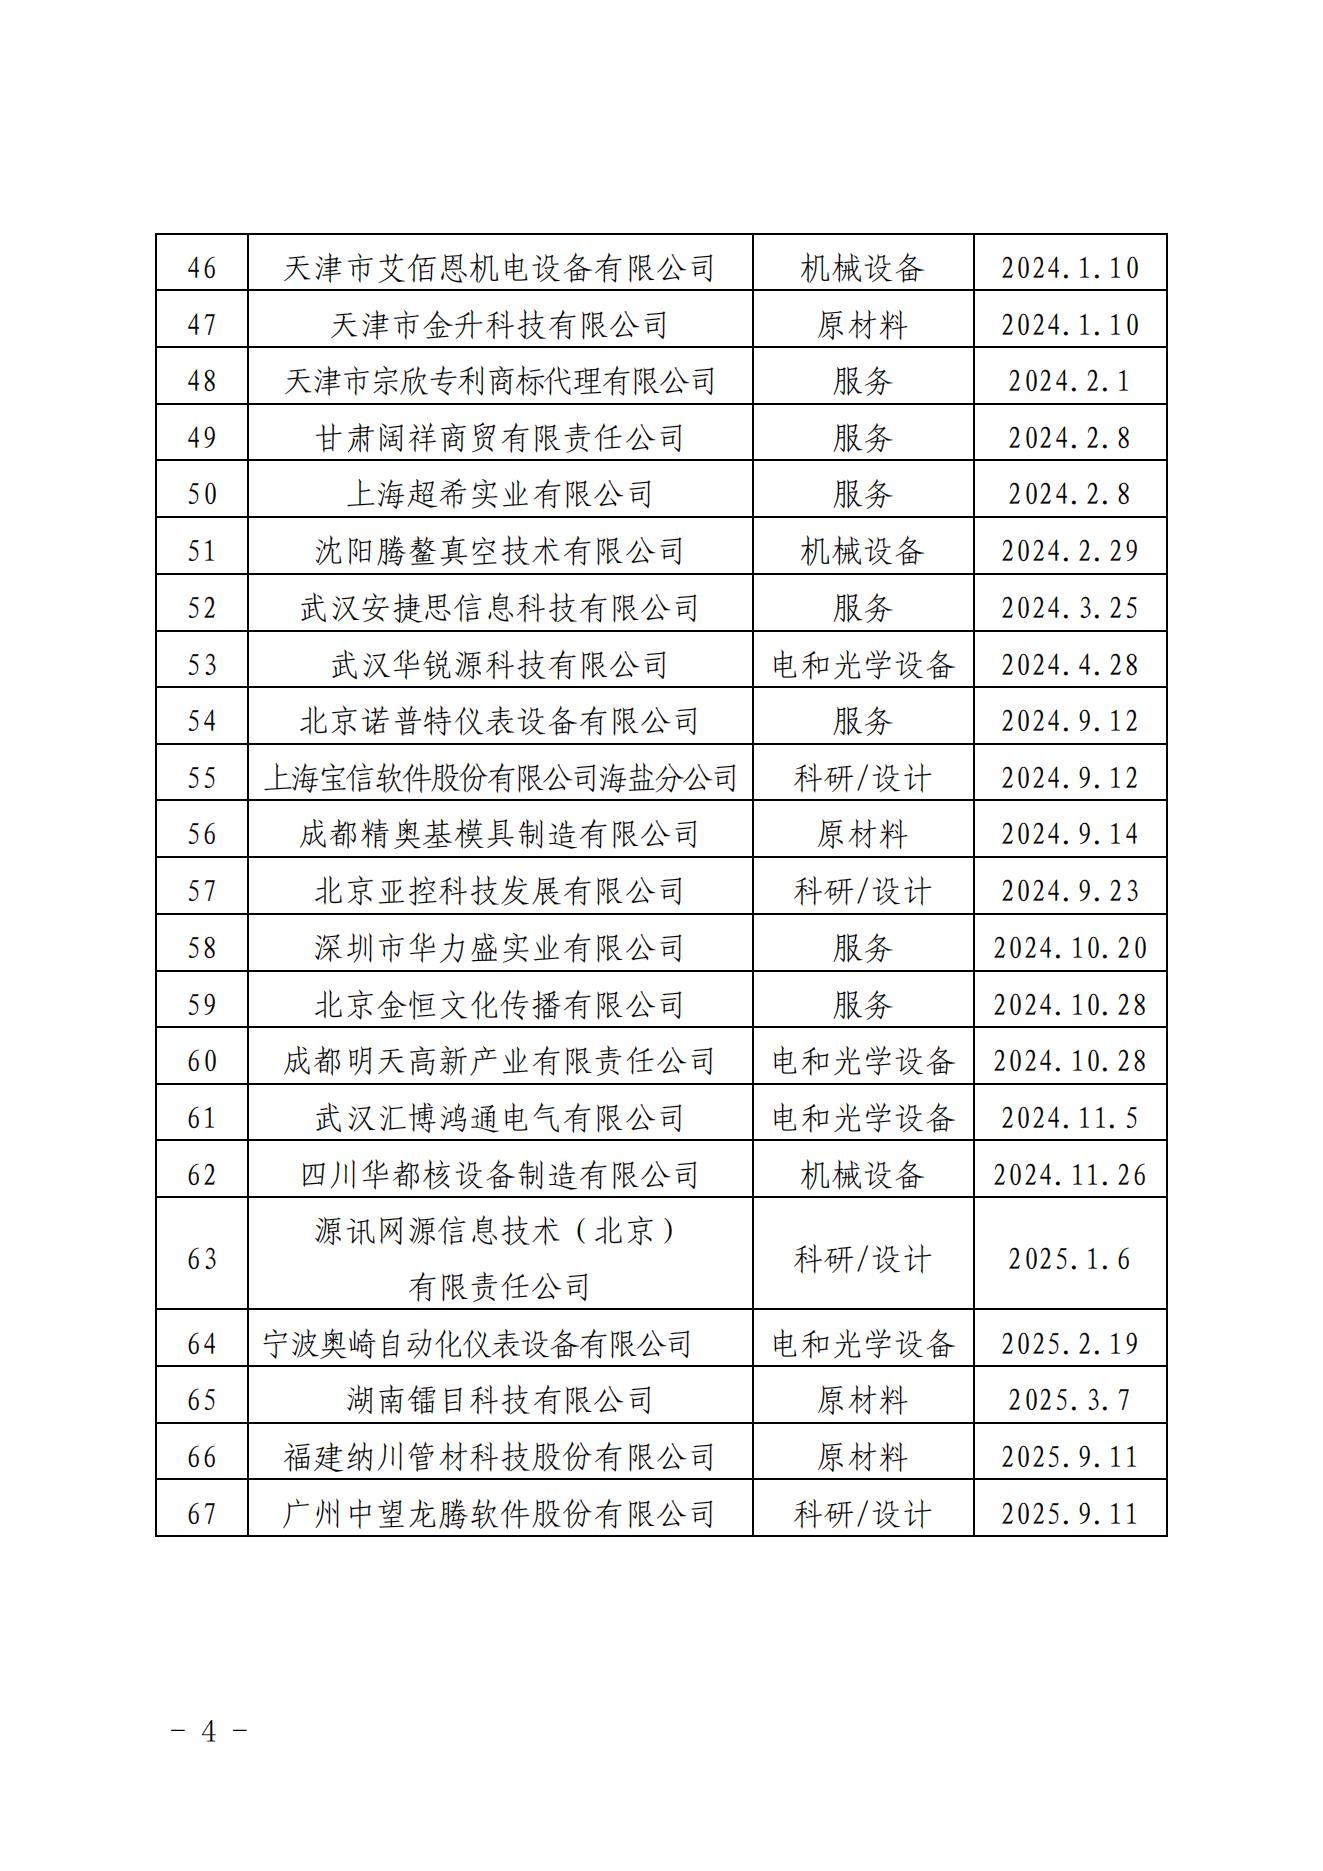 关于发布中国核能行业协会核能行业第十二批合格供应商名录的公告_03.jpg